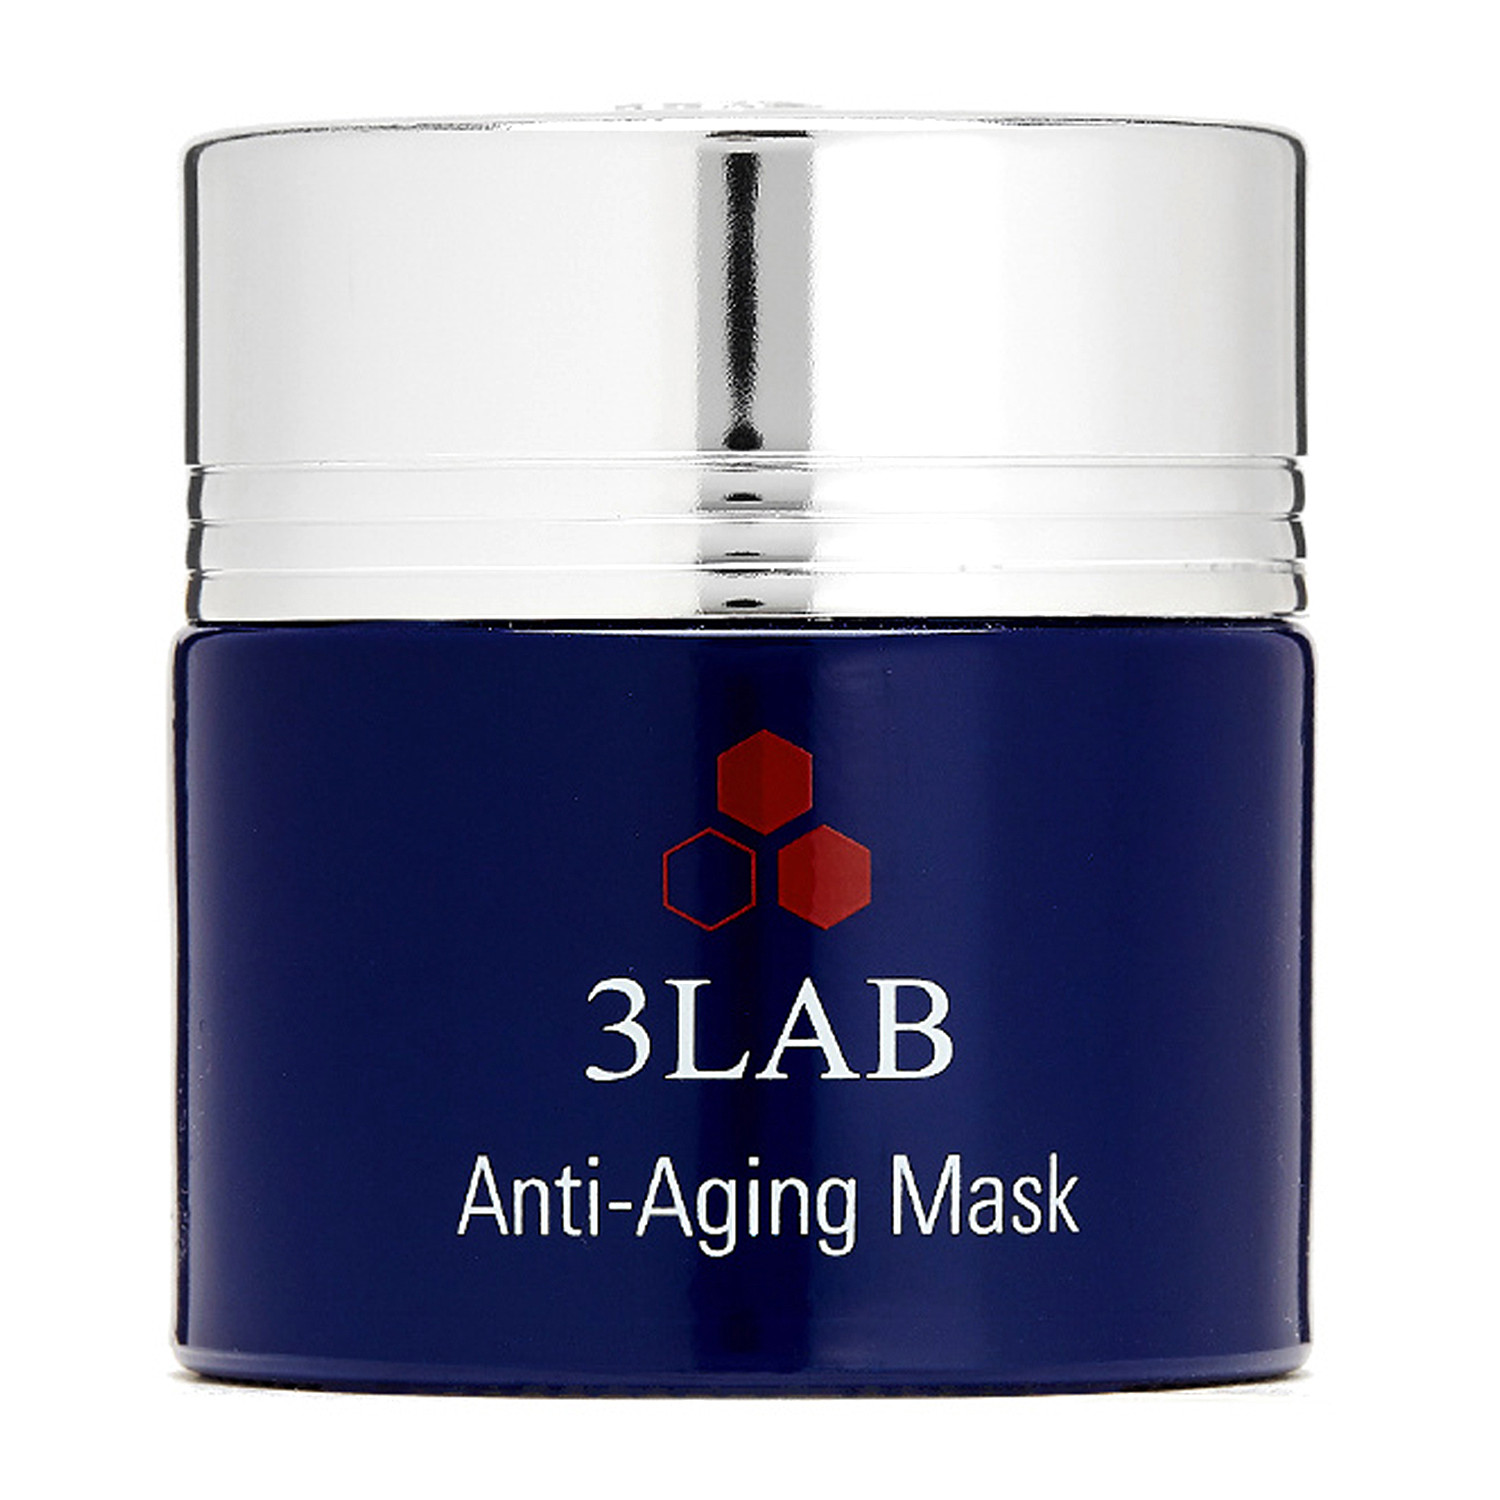 Відгуки про 3LAB Anti-Aging Mask Антивозрастная маска для лица